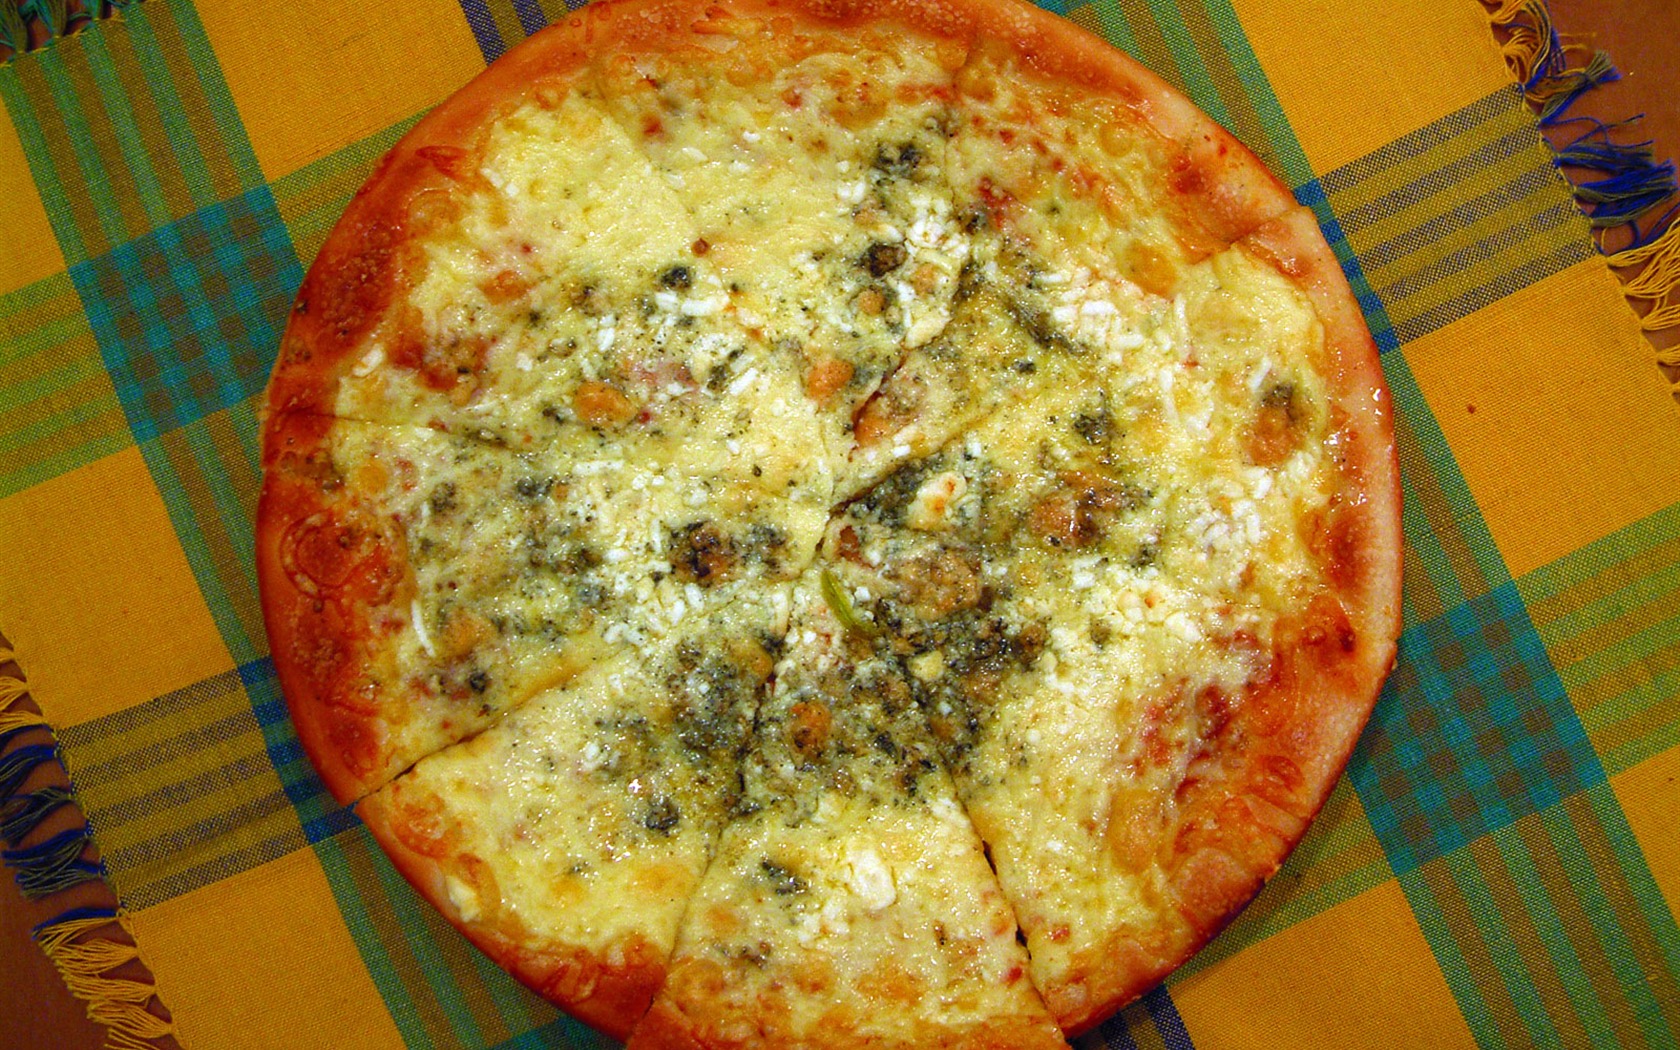 Fondos de pizzerías de Alimentos (1) #15 - 1680x1050